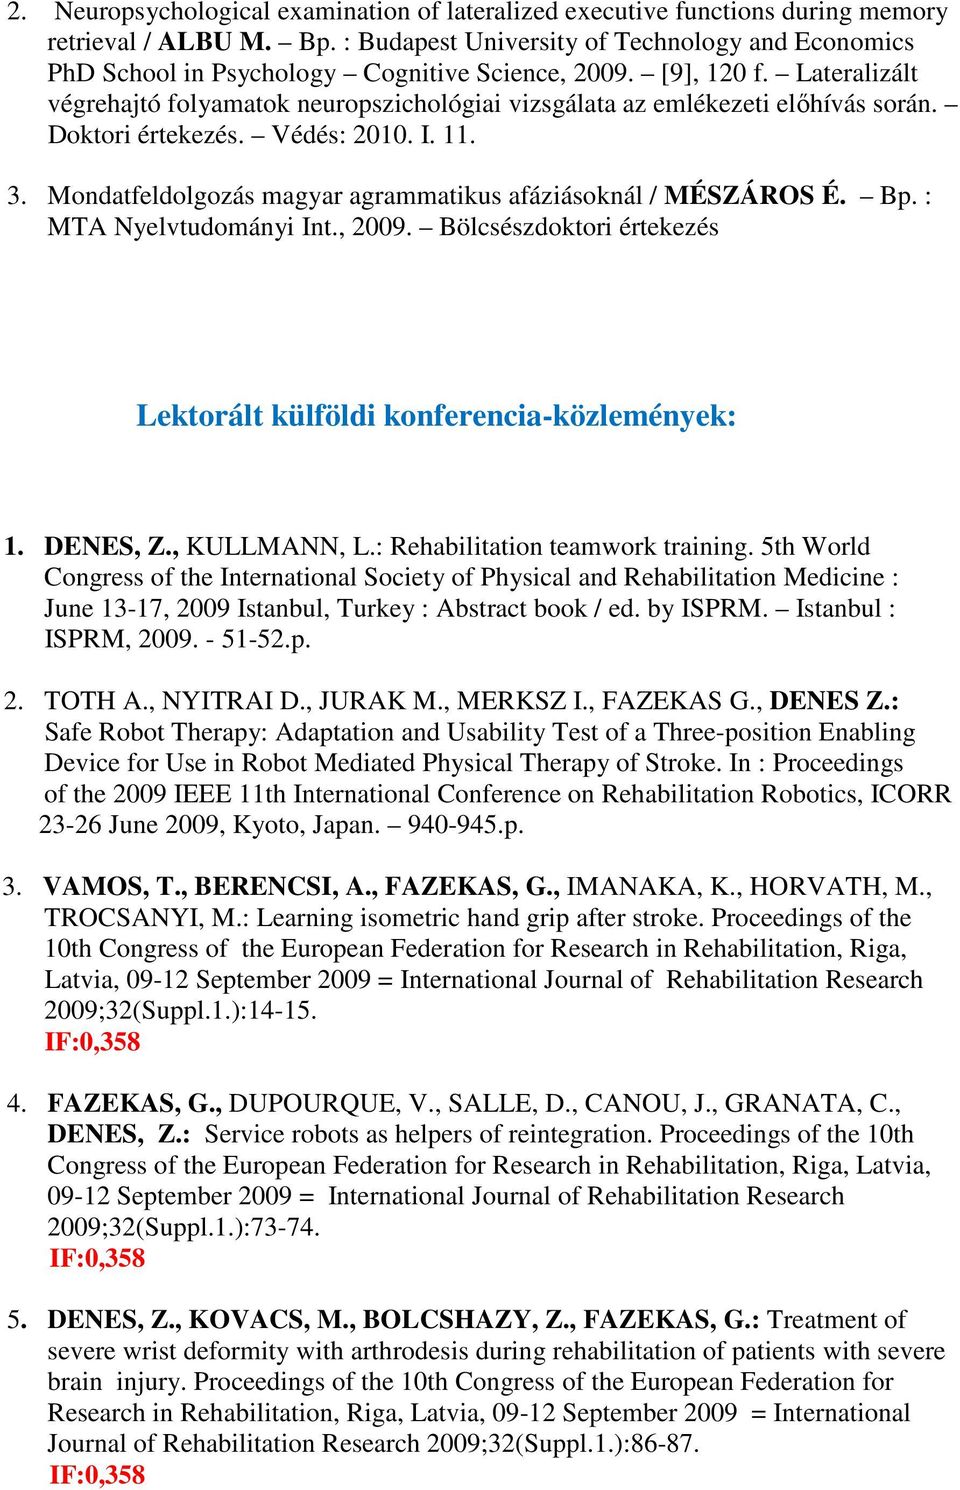 Lateralizált végrehajtó folyamatok neuropszichológiai vizsgálata az emlékezeti előhívás során. Doktori értekezés. Védés: 2010. I. 11. 3.